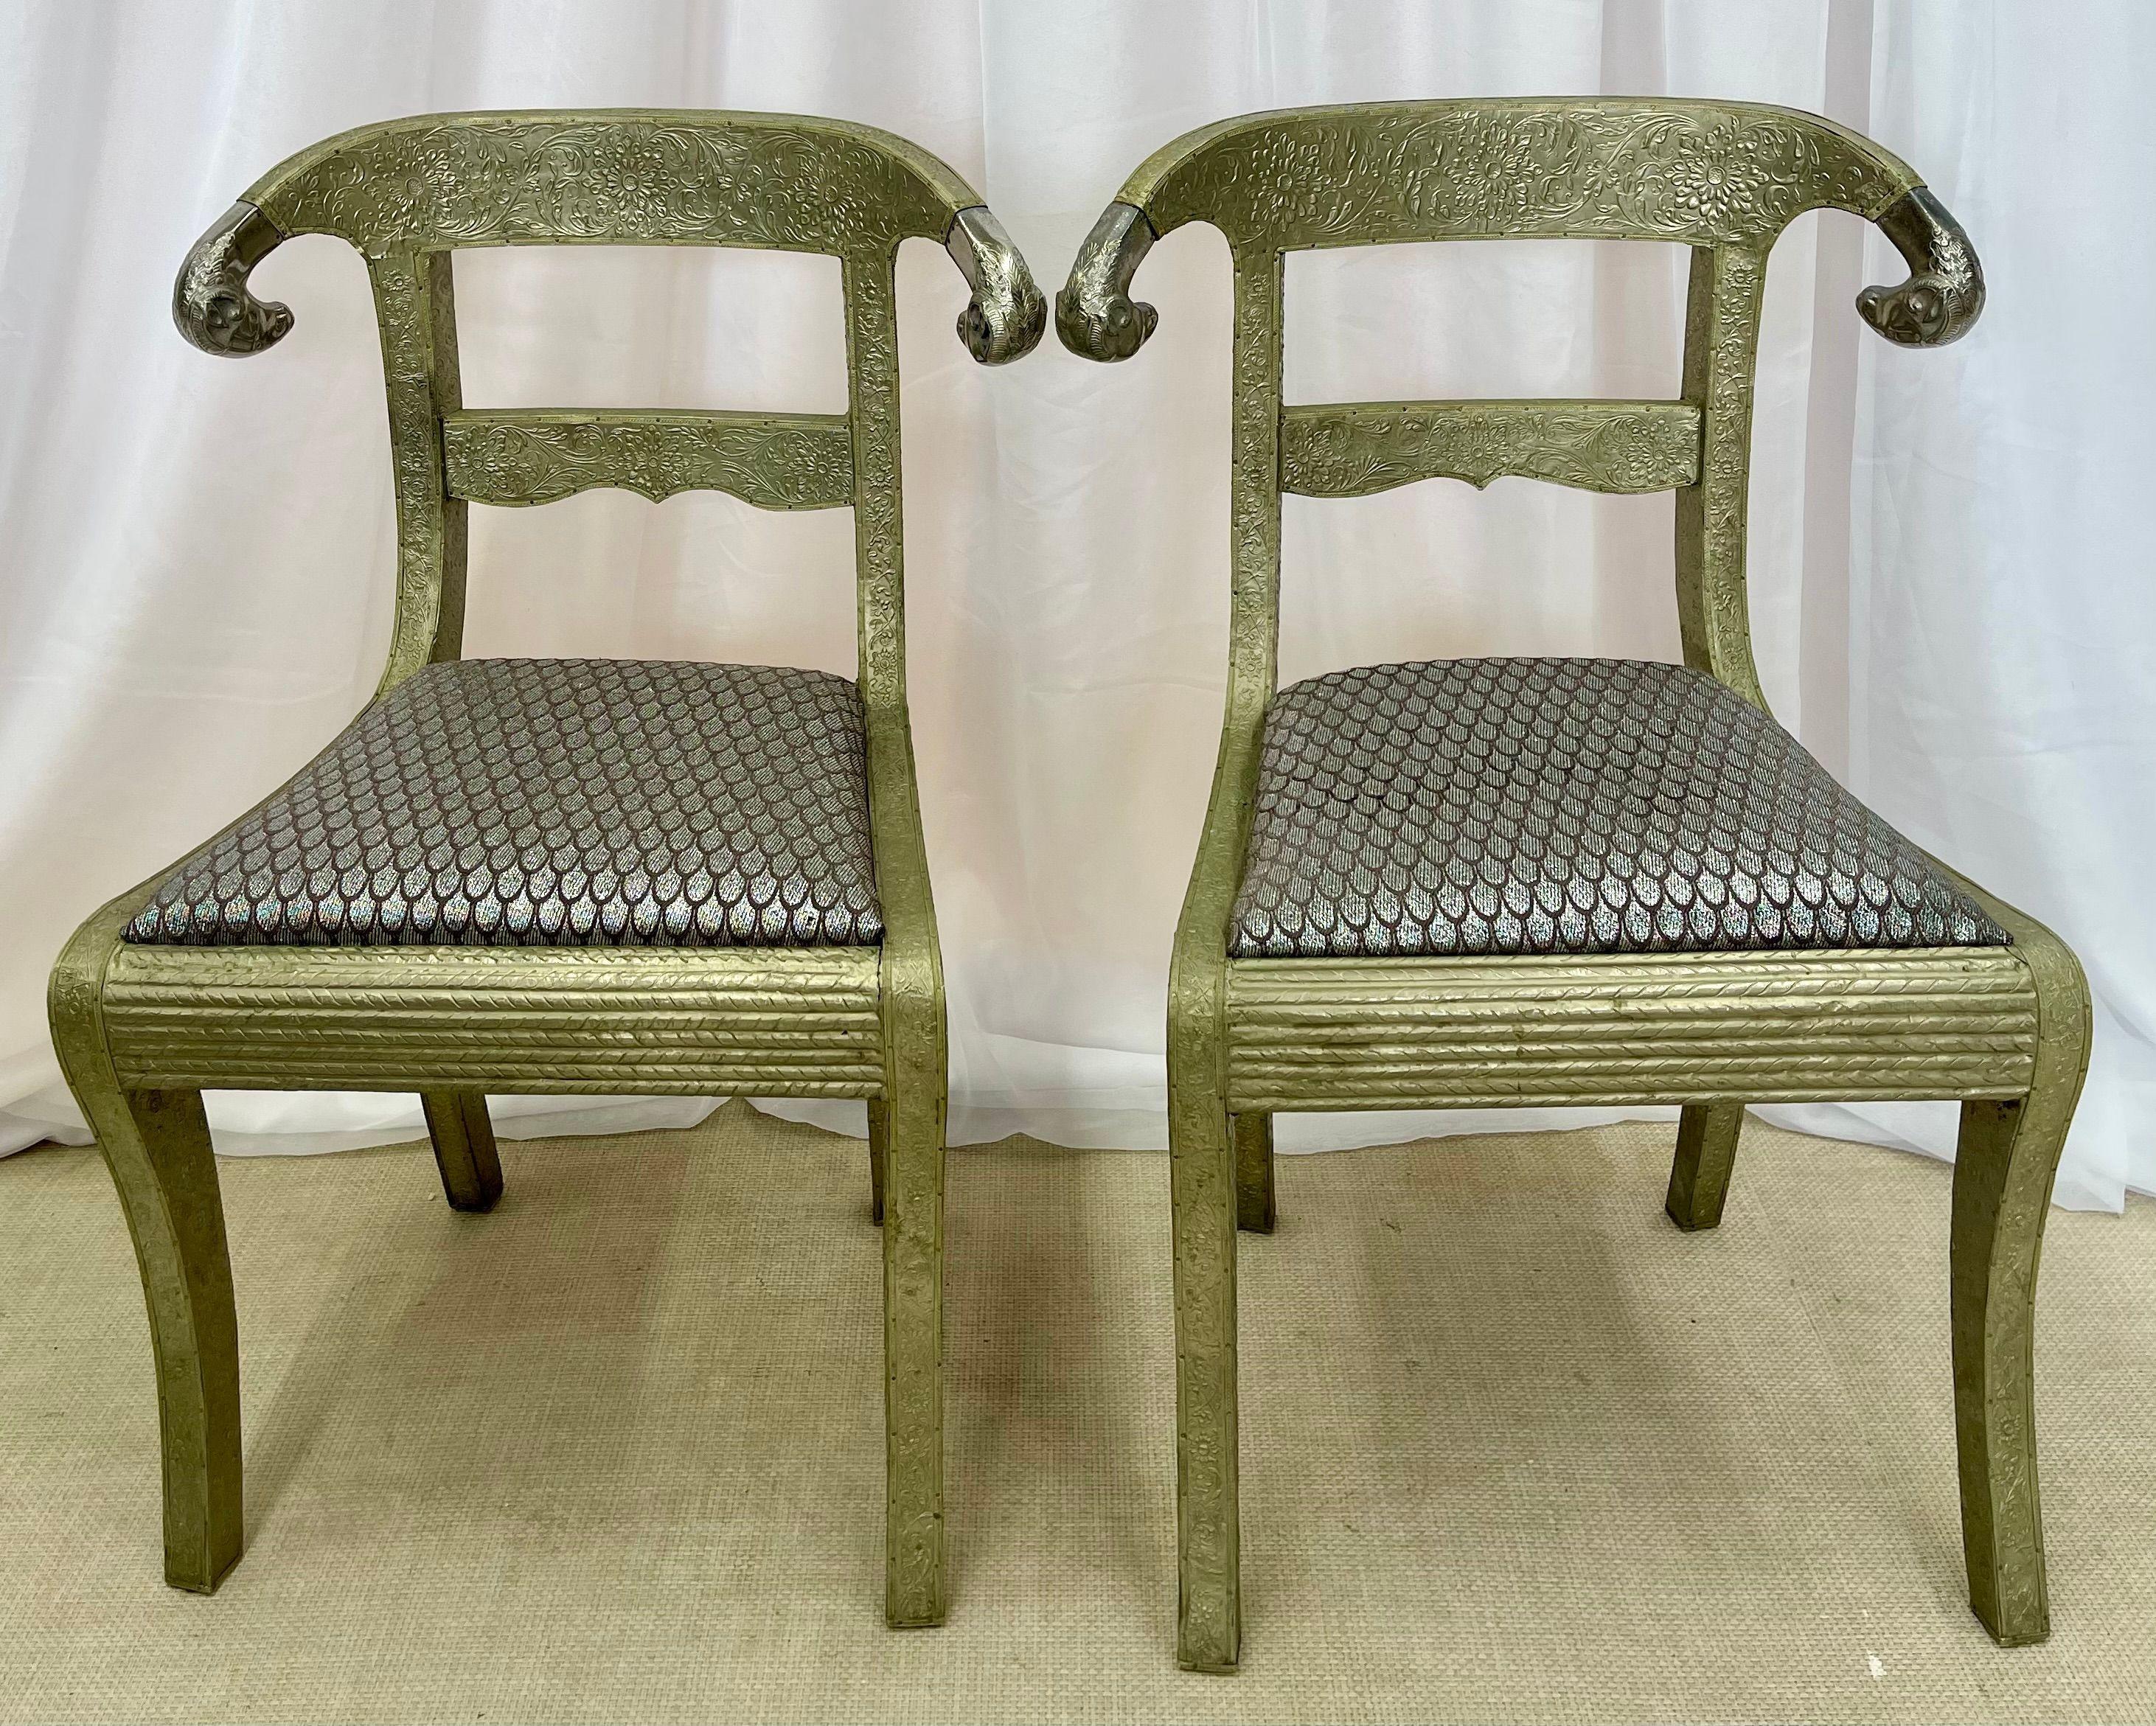 Ein Paar gustavianischer oder neoklassizistischer Beistellstühle kann in jedem Raum verwendet werden. Jeder hat einen vollständig mit Metall ummantelten Rahmen mit fein geschnitzten Widderköpfen an den Rückenlehnen. Die fein verpackten Metallrahmen